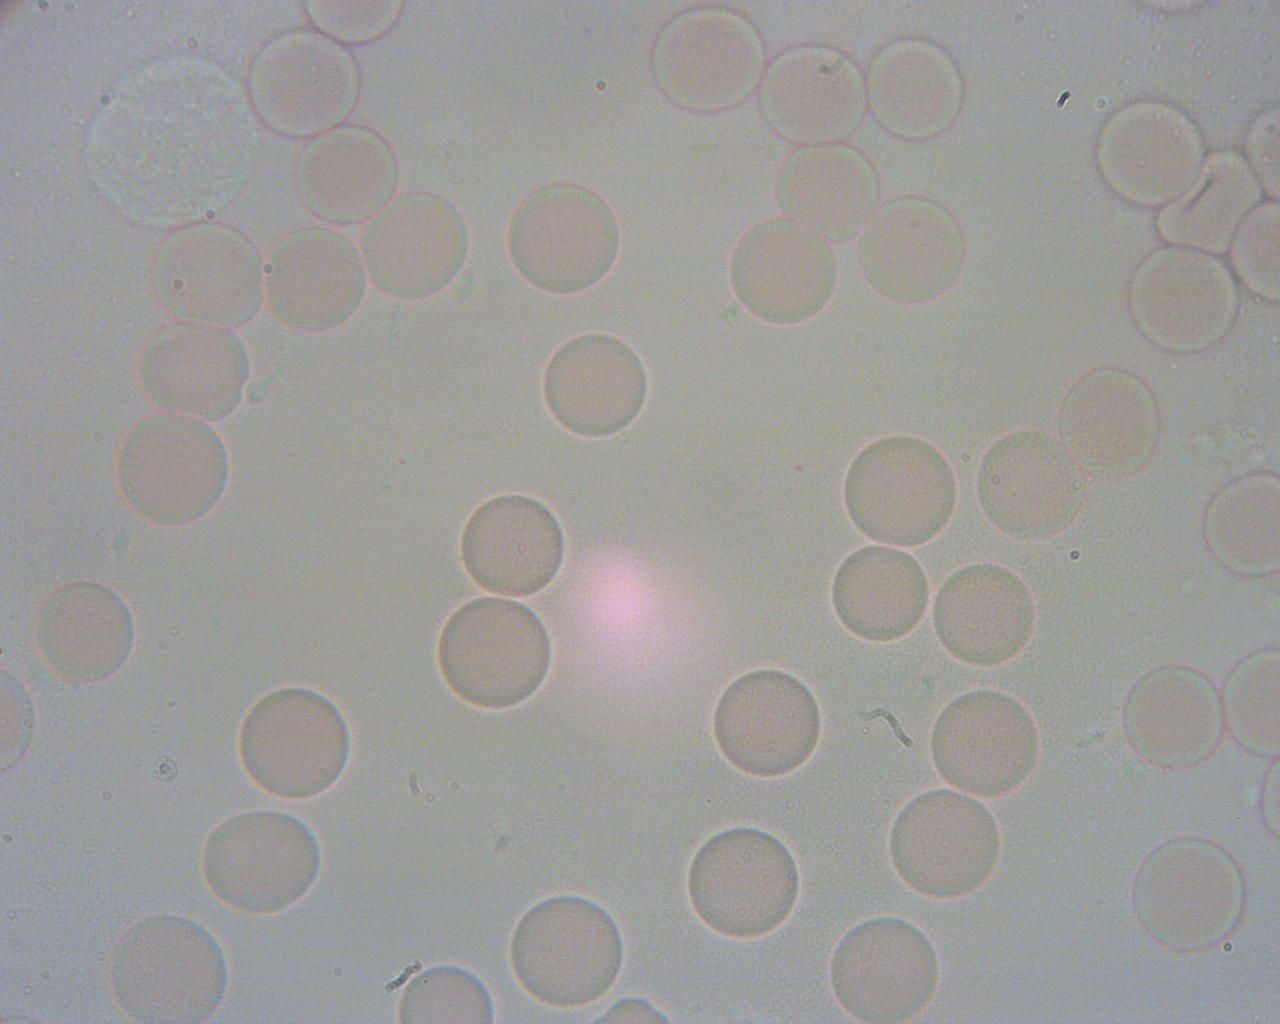 Obraz spod mikroskopu. Widać wolno pływające krwinki czerwone. Są okrągłe. 